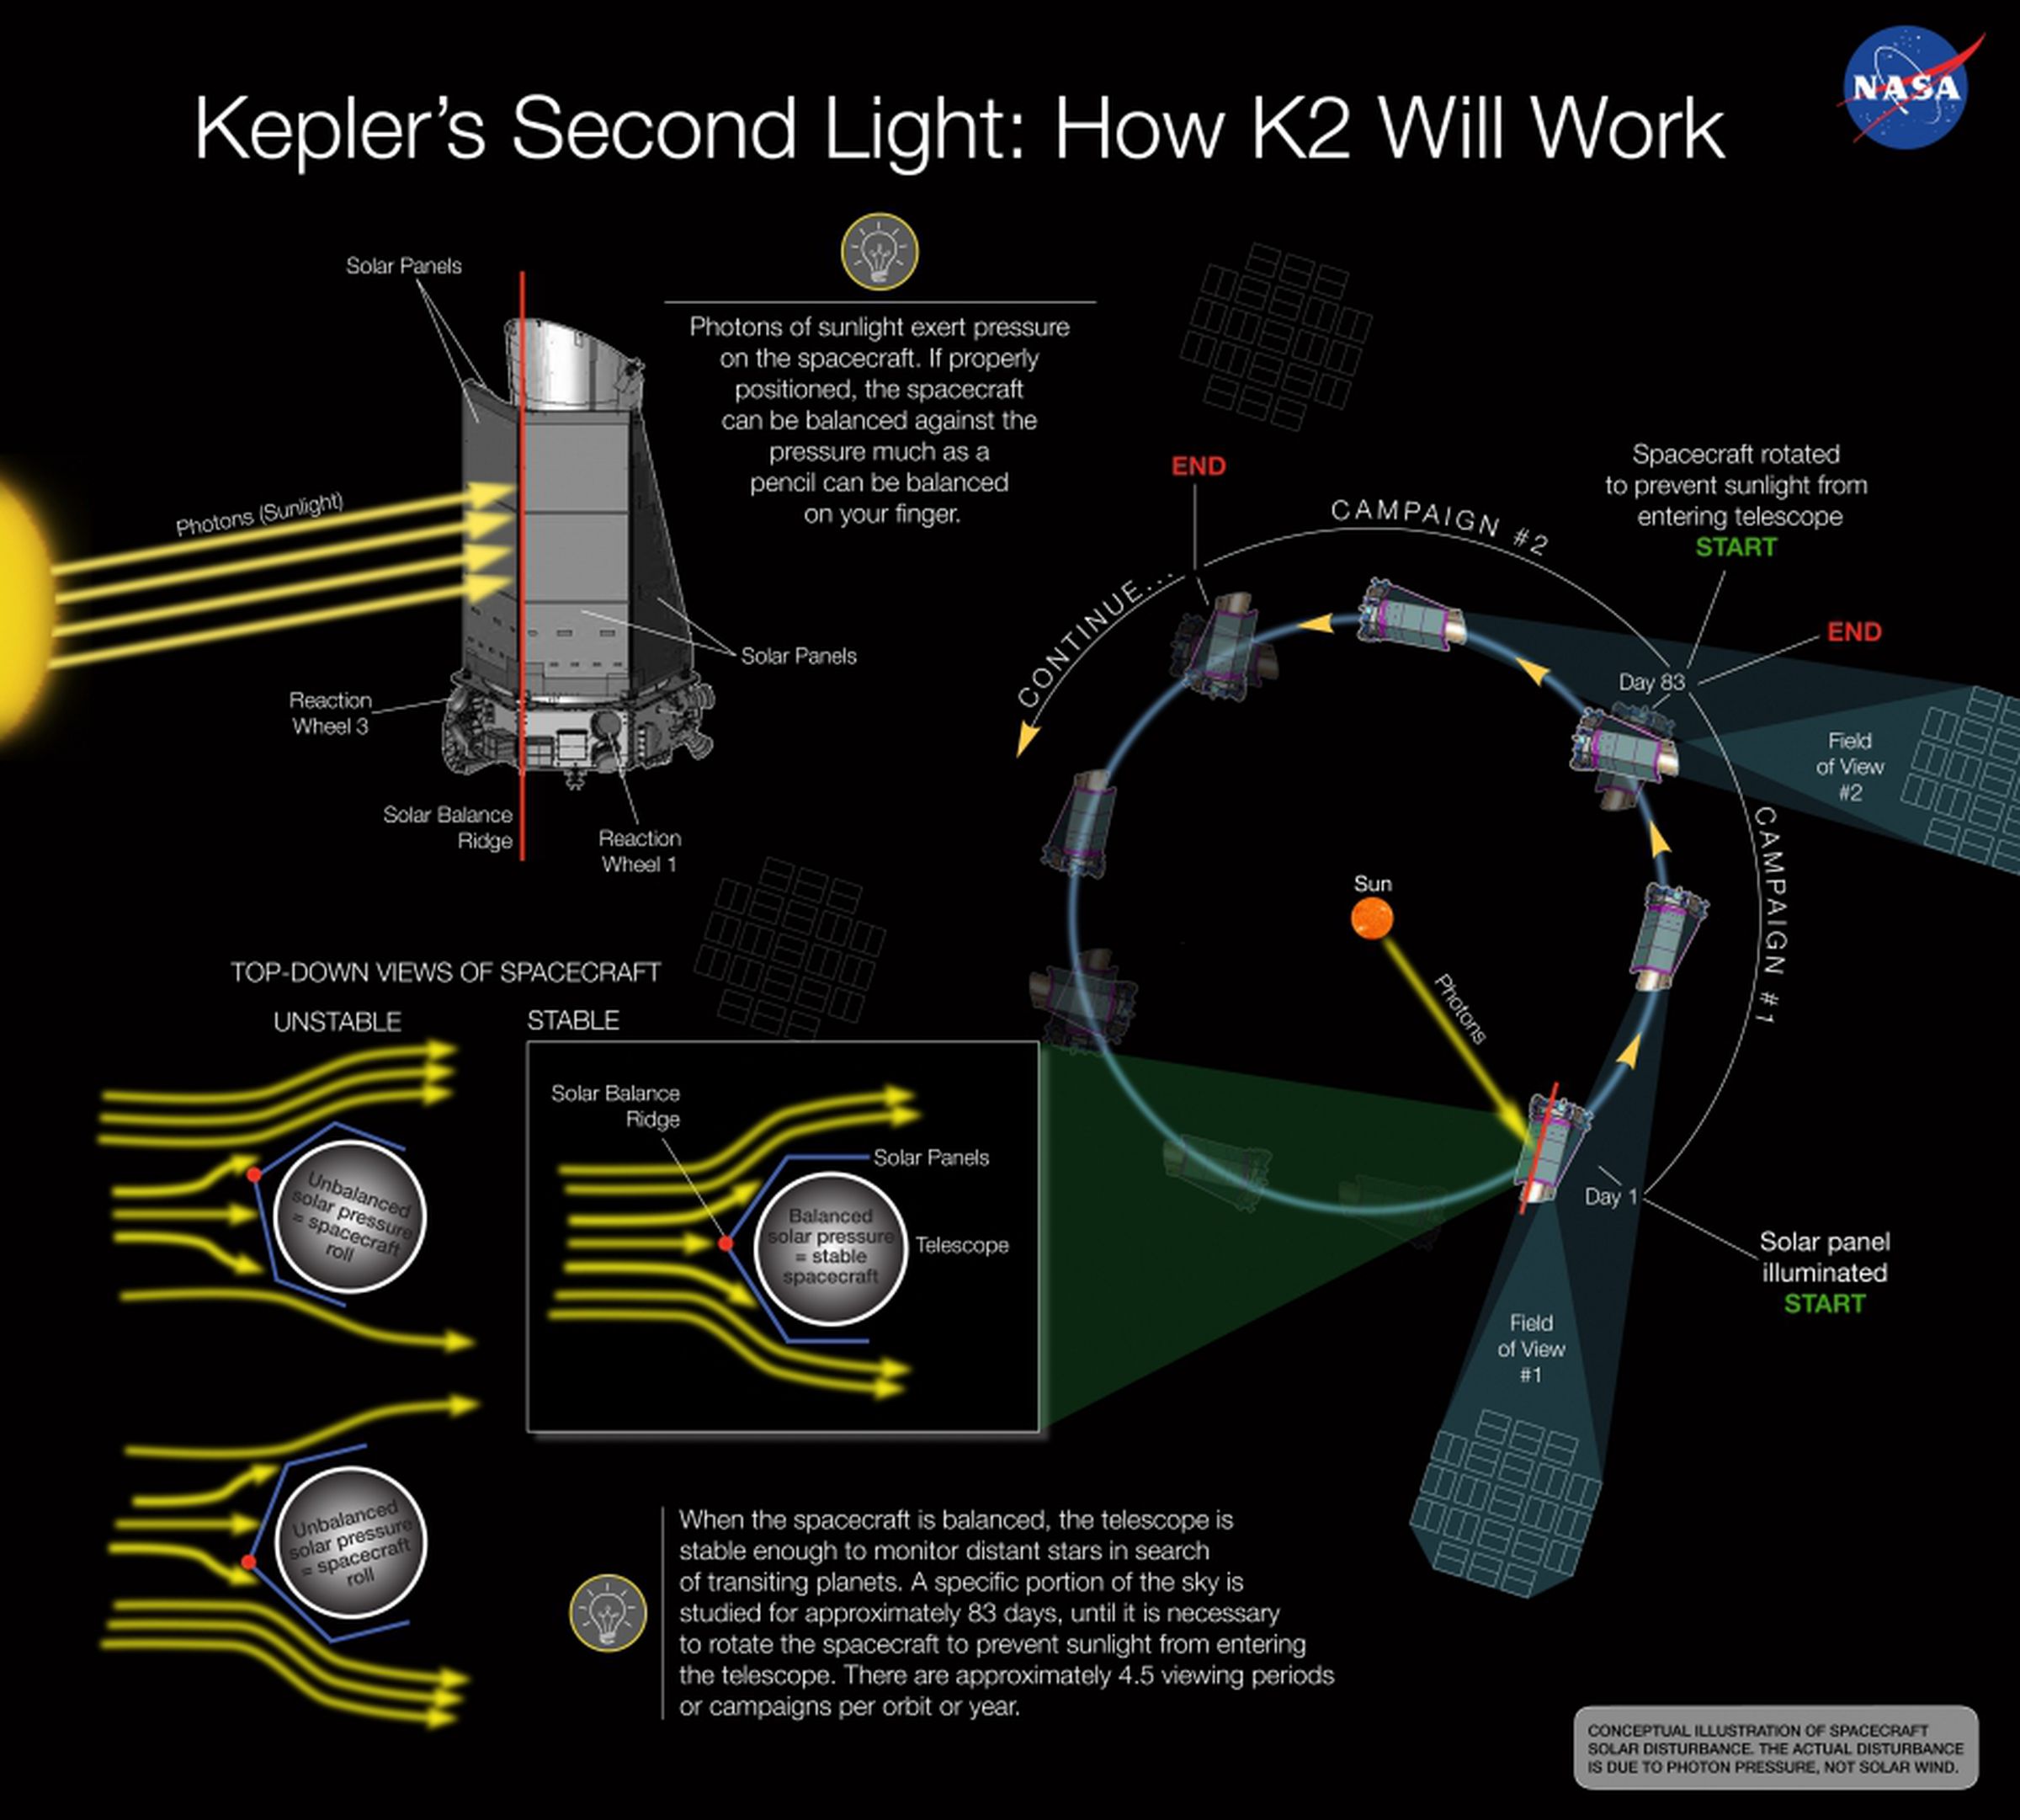 Kepler K2 mission